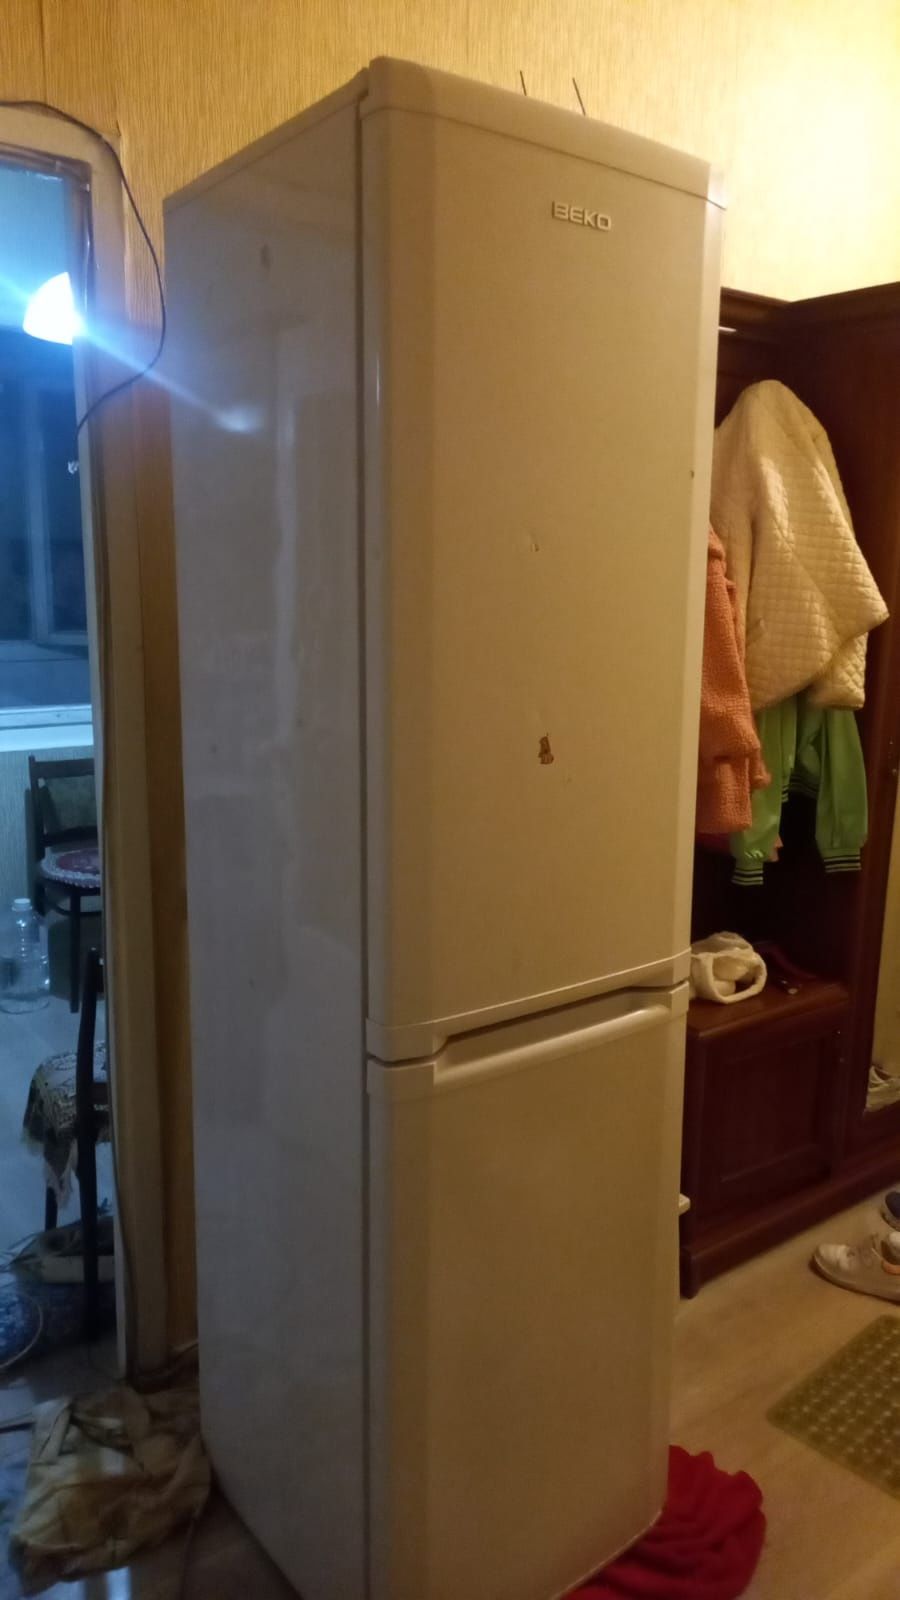 Продам холодильник беко 4х камерный